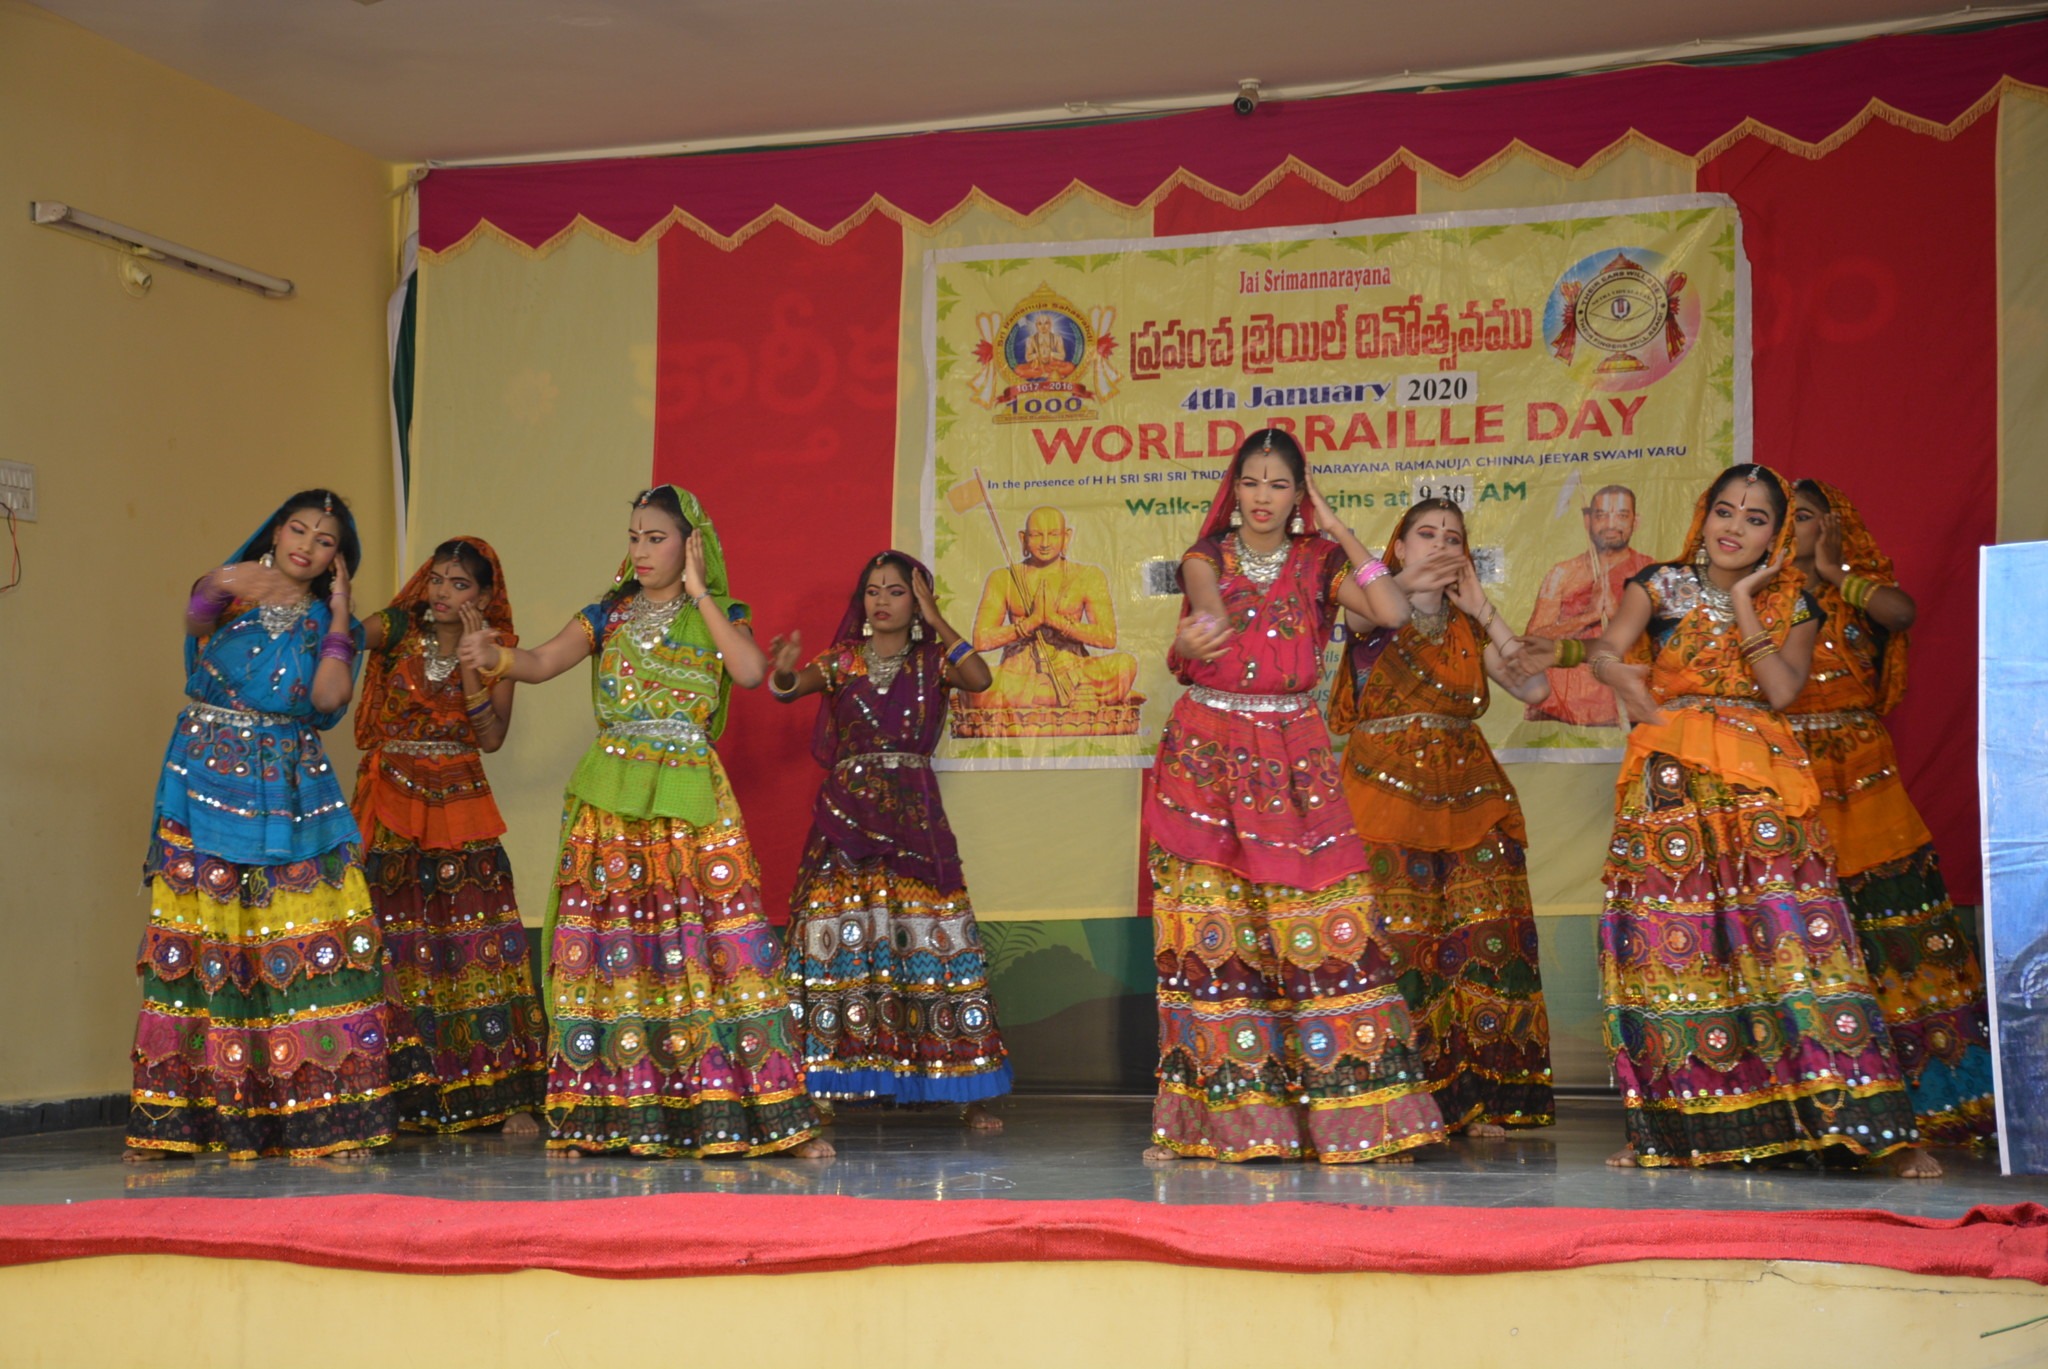 World Braille day celebrations by Netra Vidyalaya 2020 students scaled